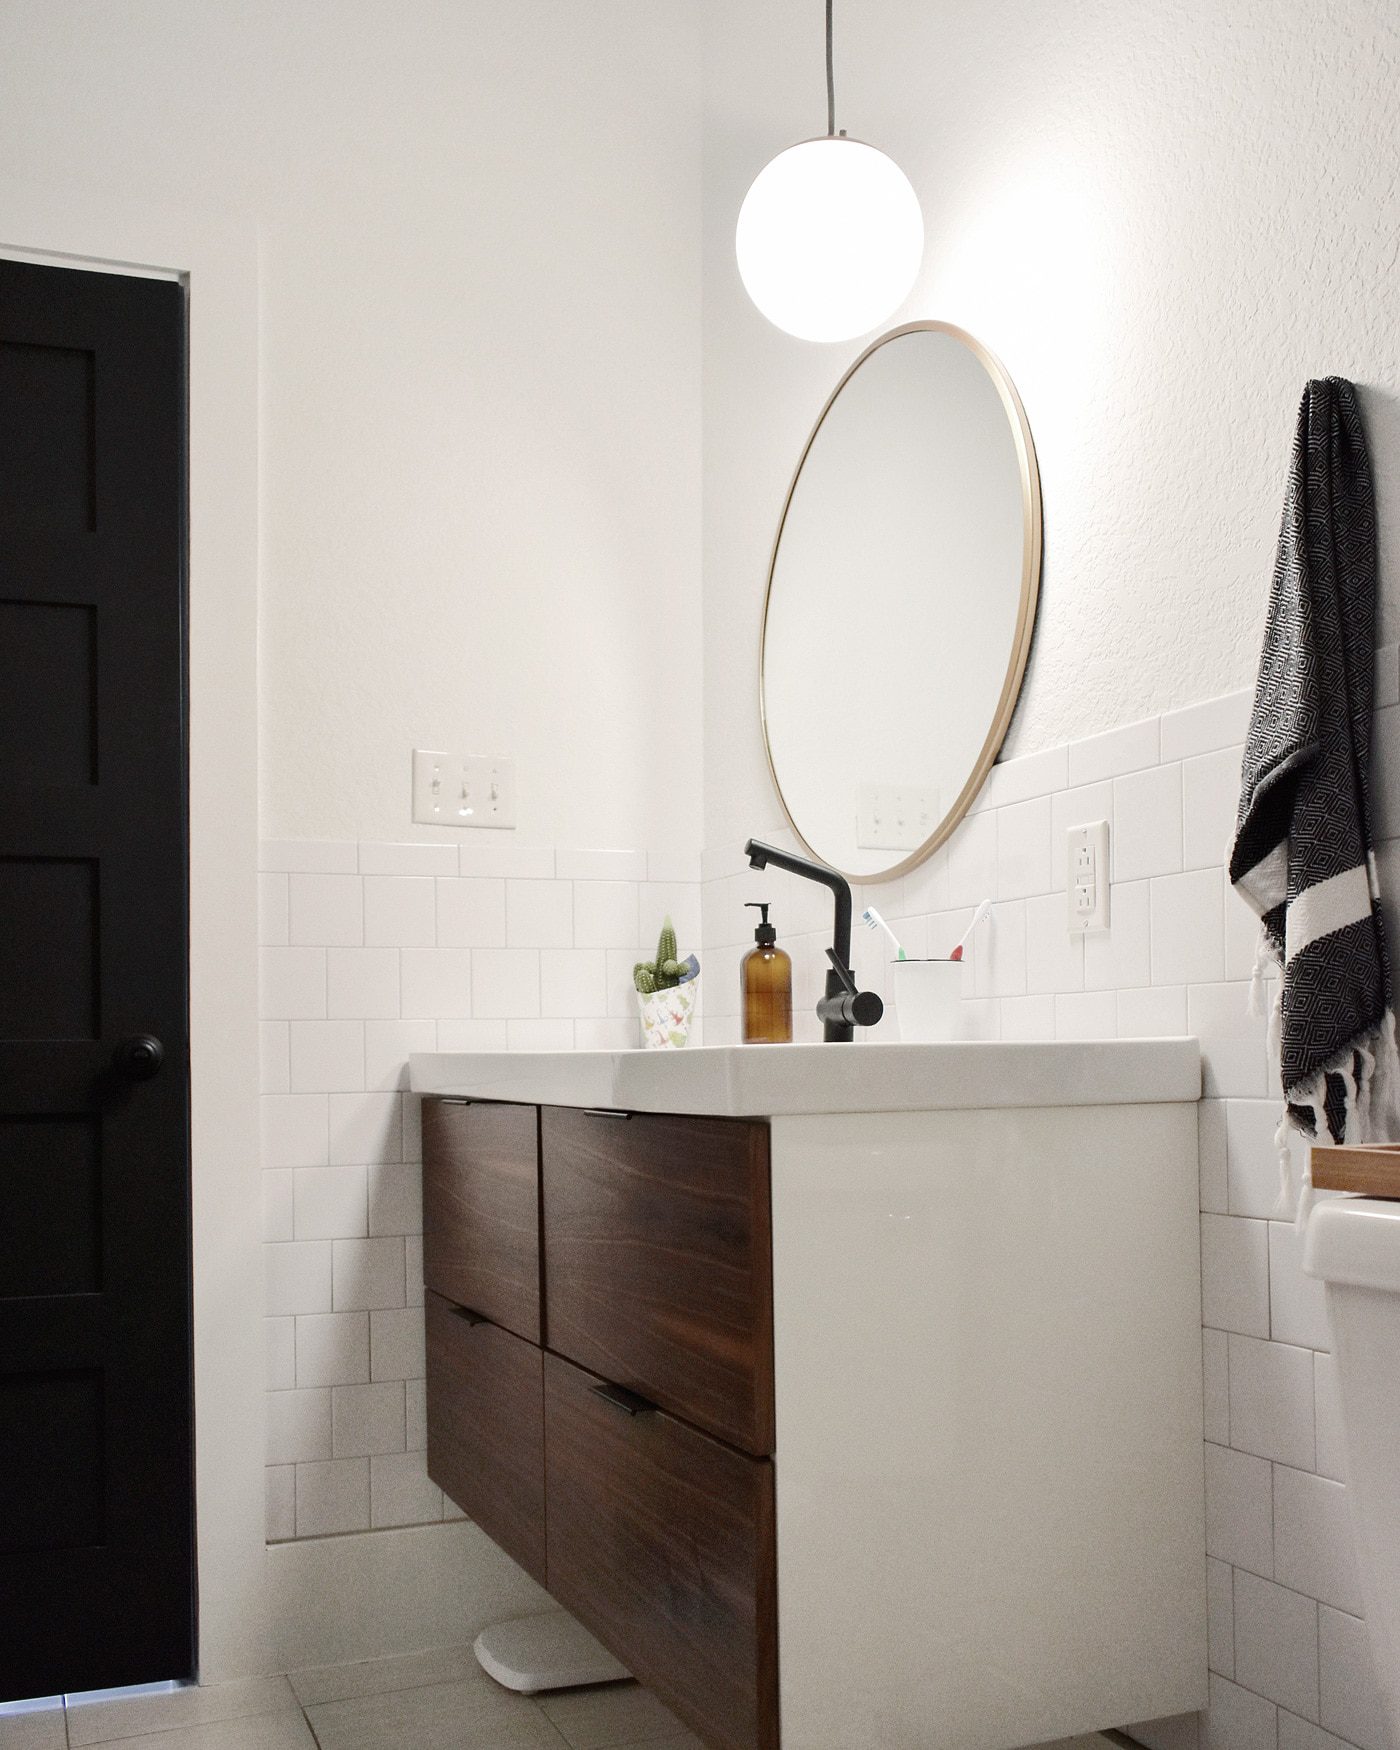 Explore shower fixtures for your bathroom - IKEA